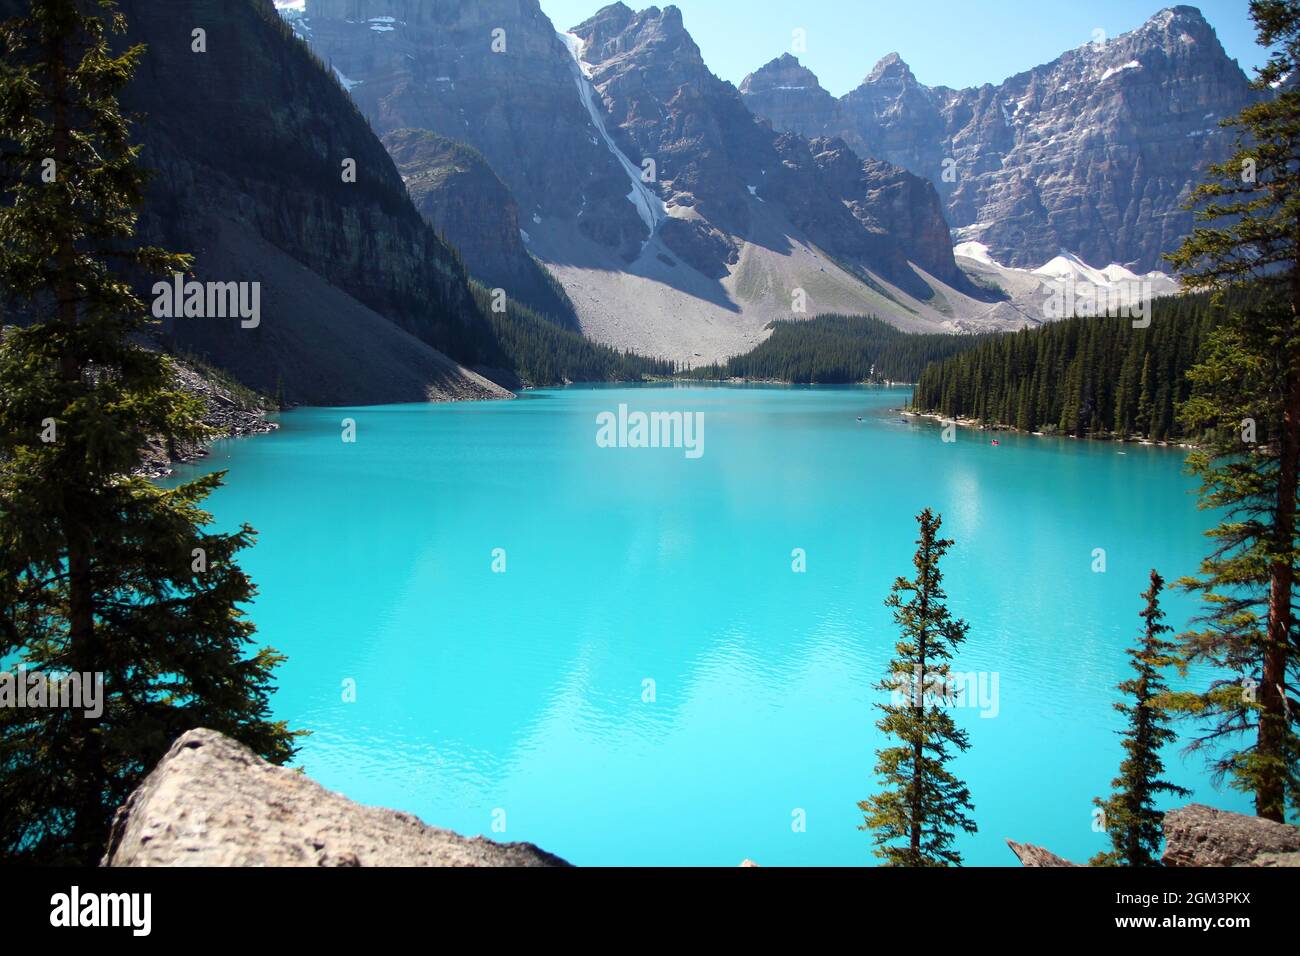 Concentrez-vous sur les eaux turquoise du lac Moraine, dans le parc national Banff, au Canada Banque D'Images